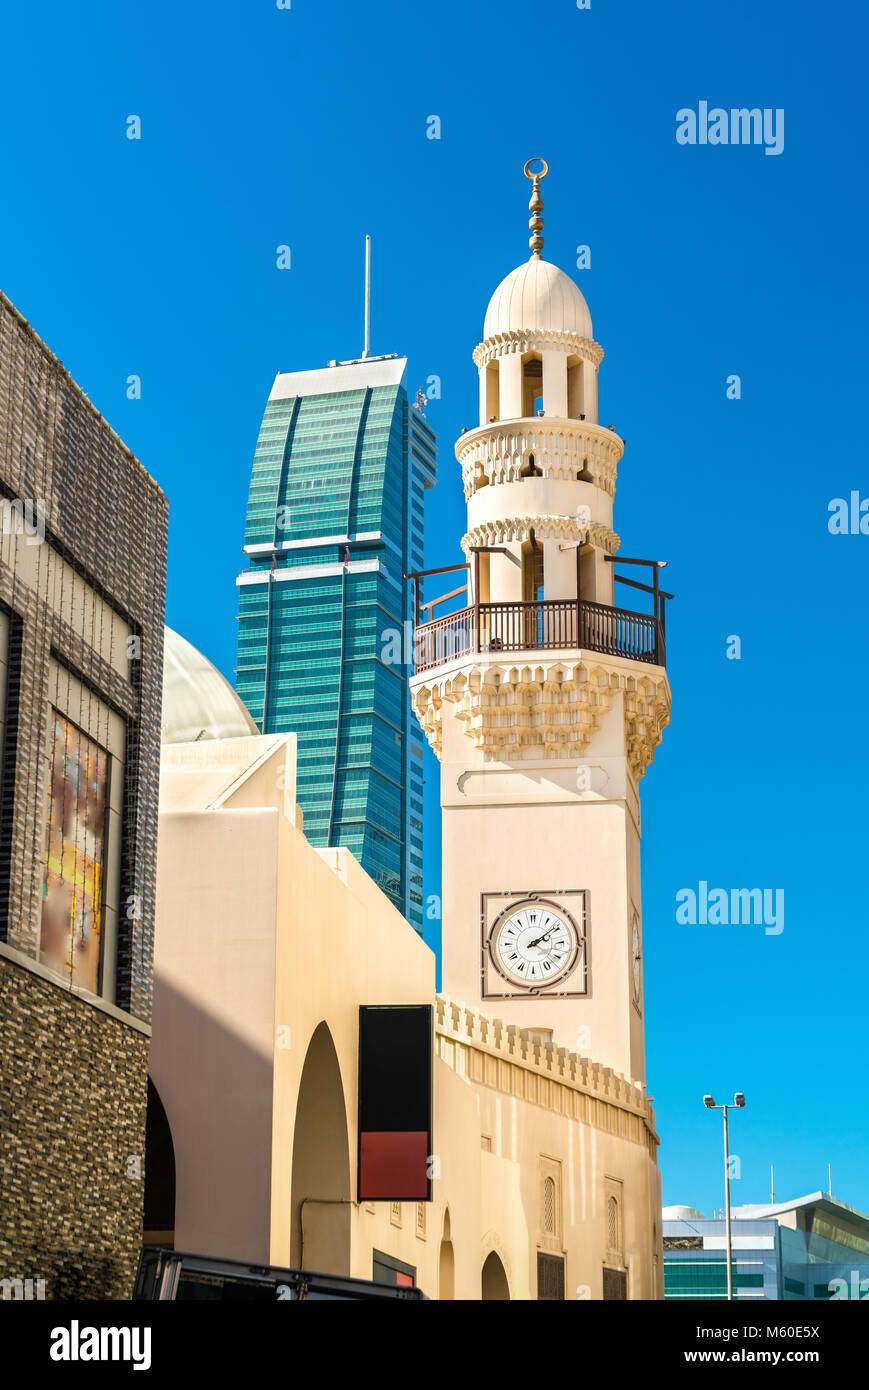 Yateem moschea nella città vecchia di Manama, la capitale del Bahrain Foto Stock